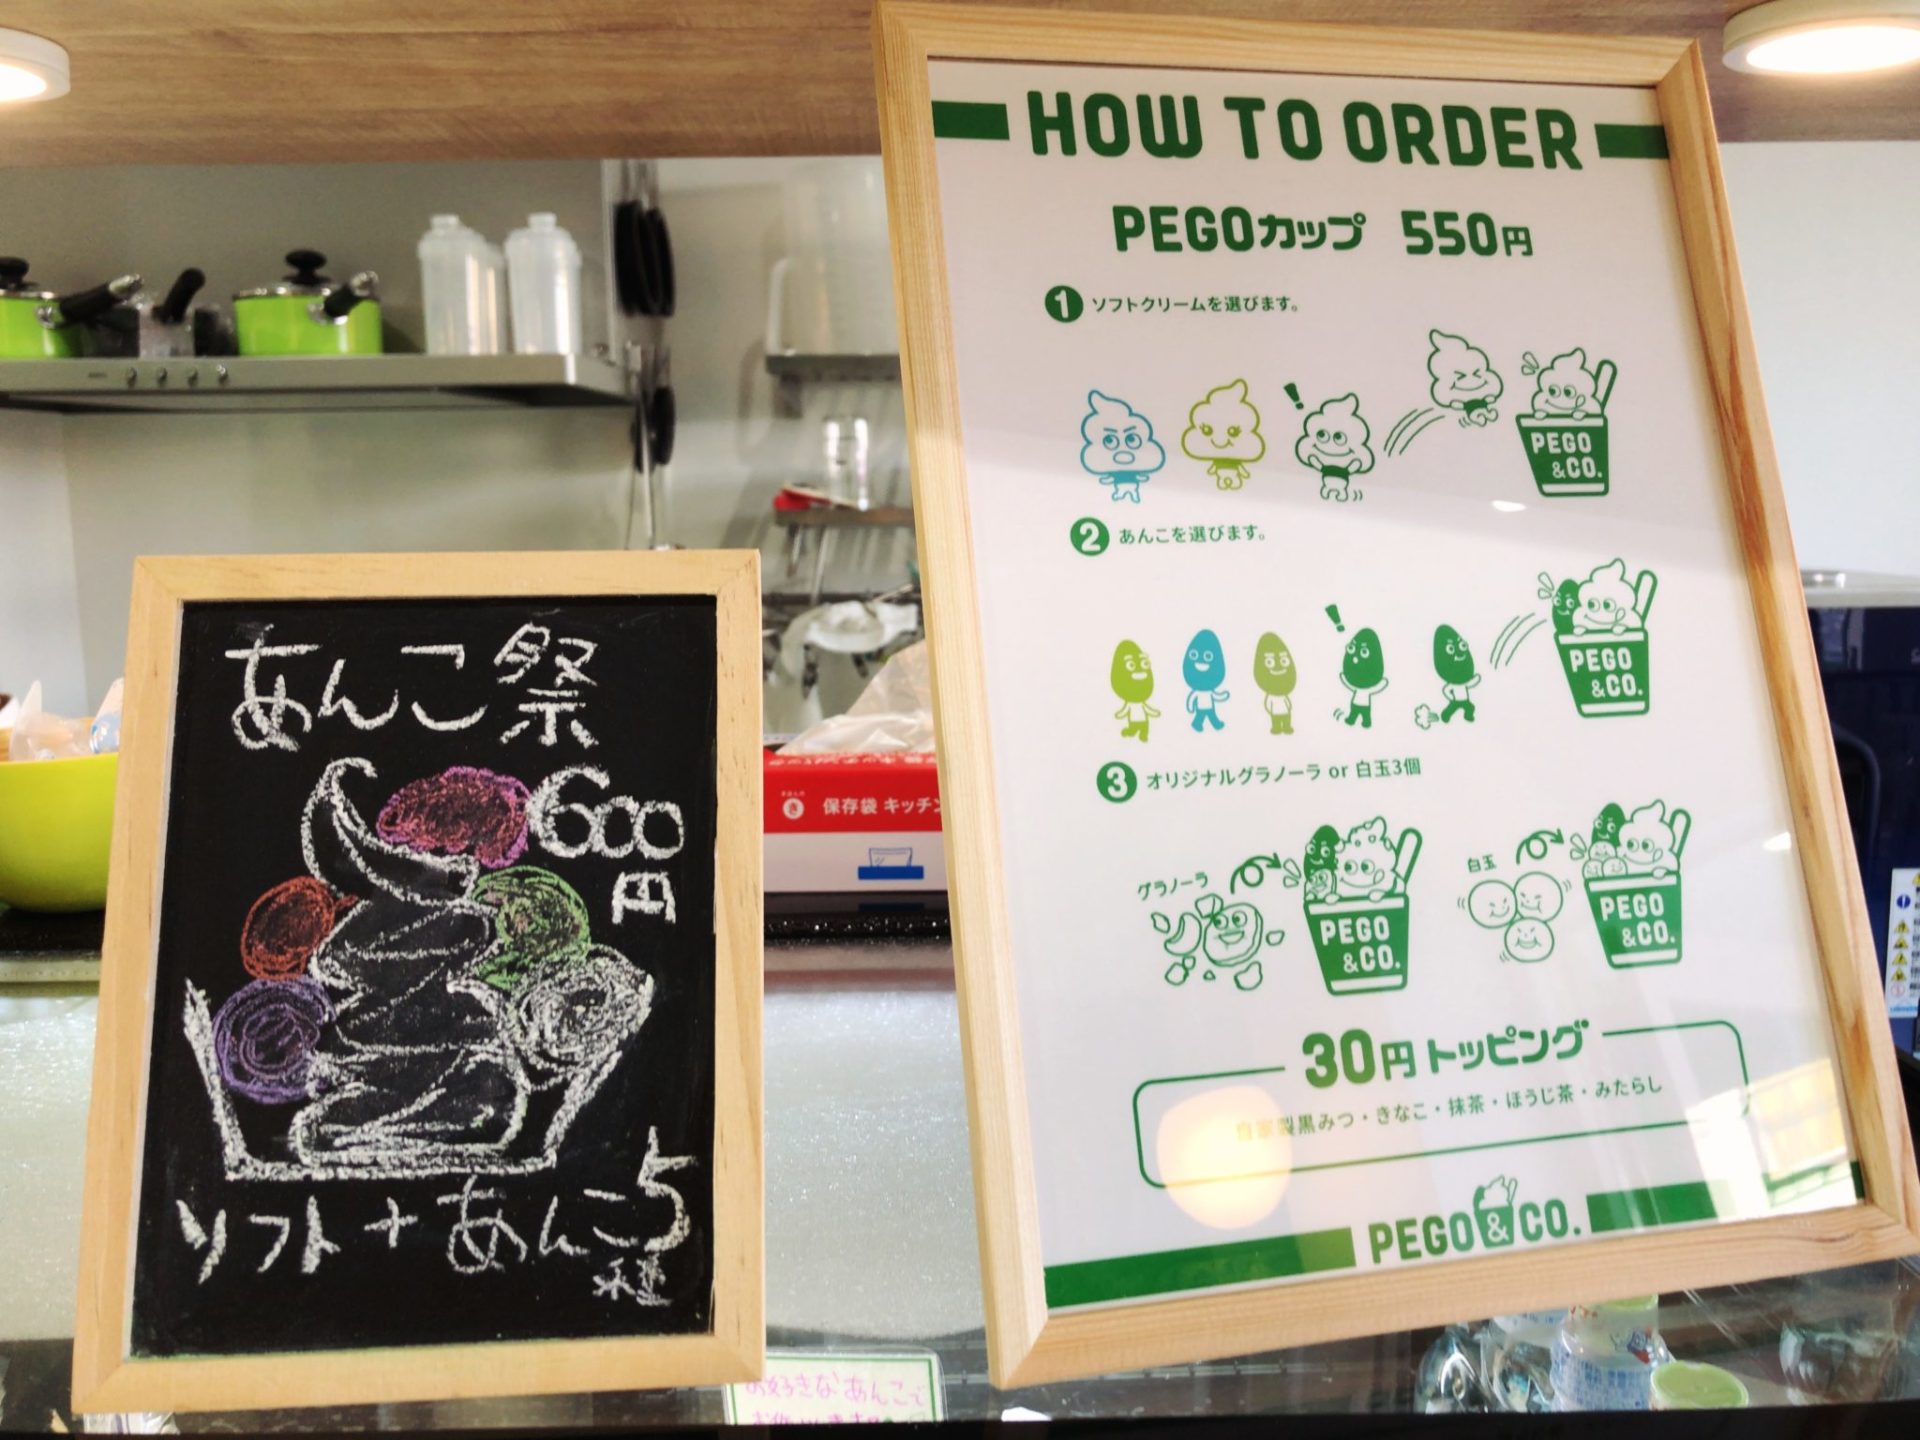 PEGO＆CO.(ぺごあんこ)世田谷店のPEGカップの食べ方